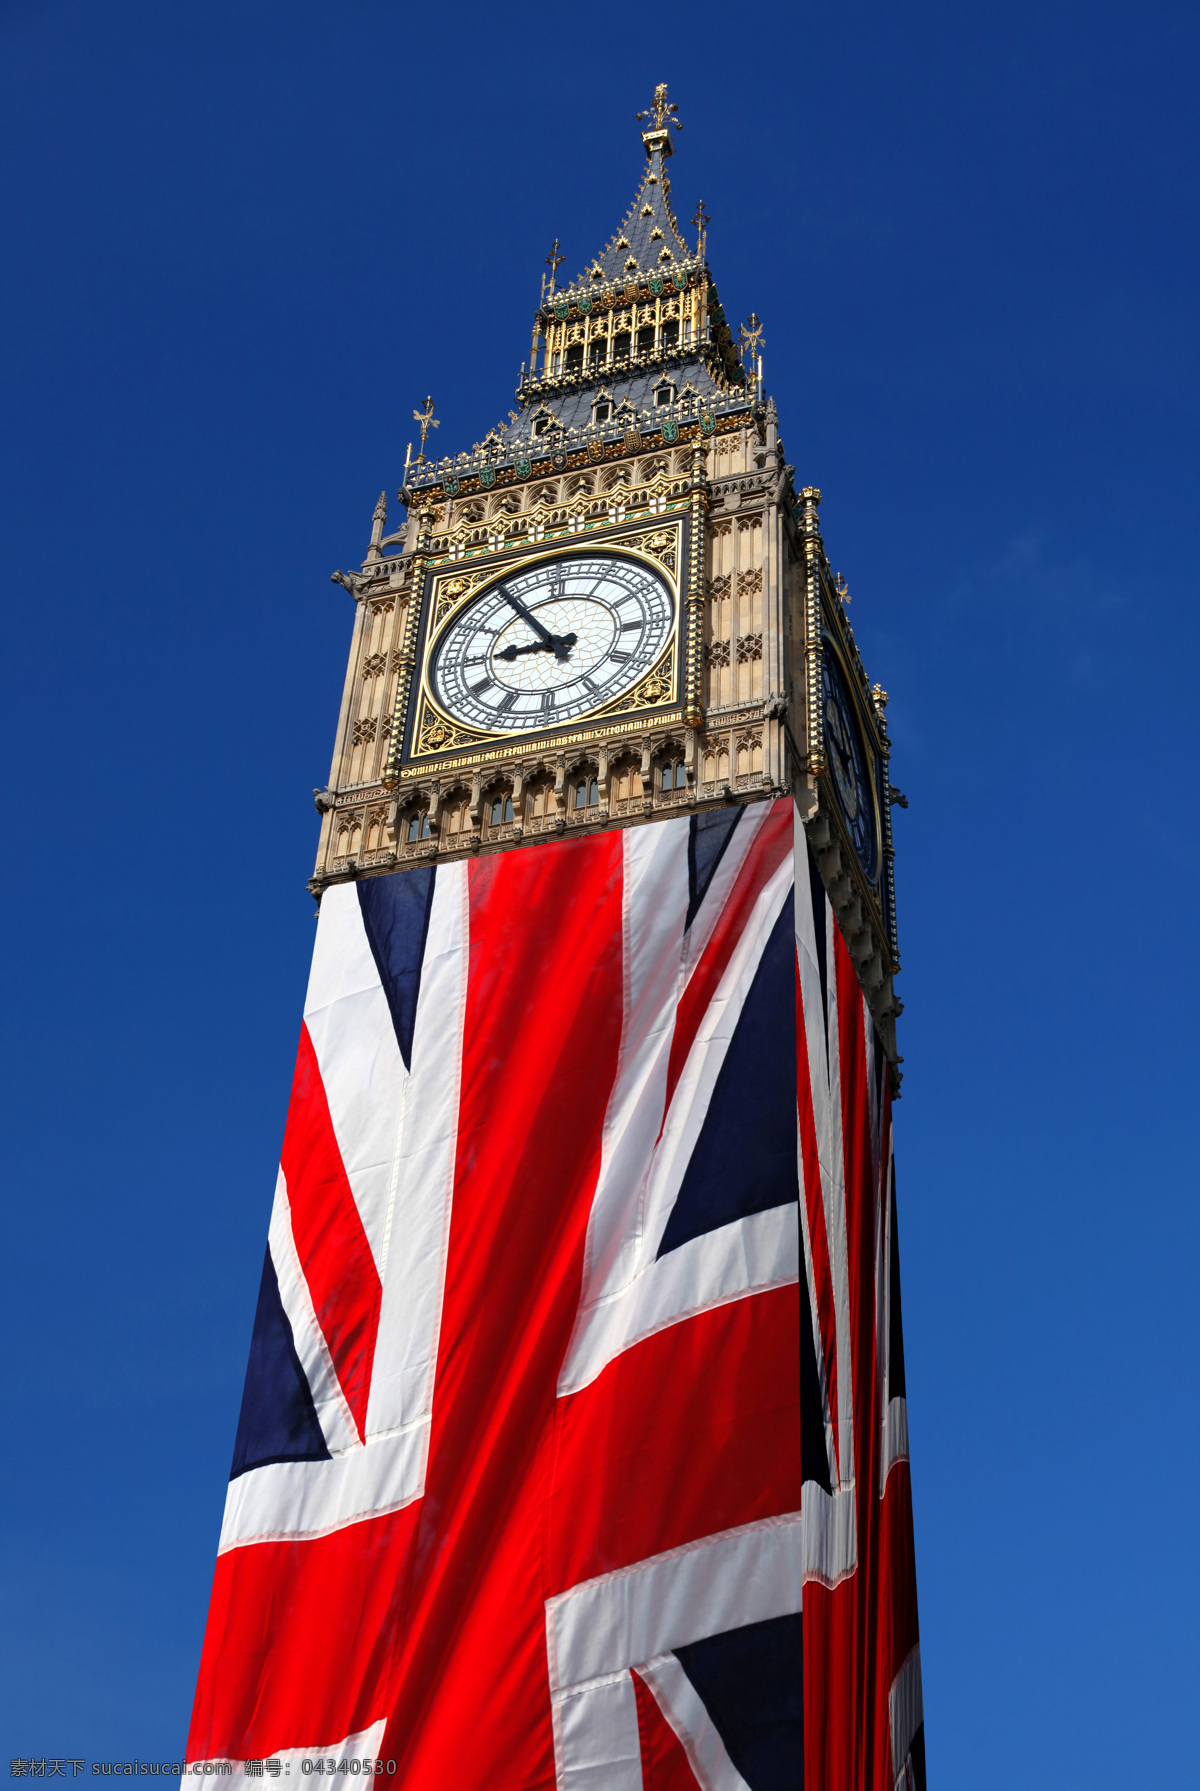 英国 国旗 大本钟 欧美经典 伦敦 欧美风格 英国主题 英国元素 英国特色图片 英国国旗 城市风光 环境家居 蓝色